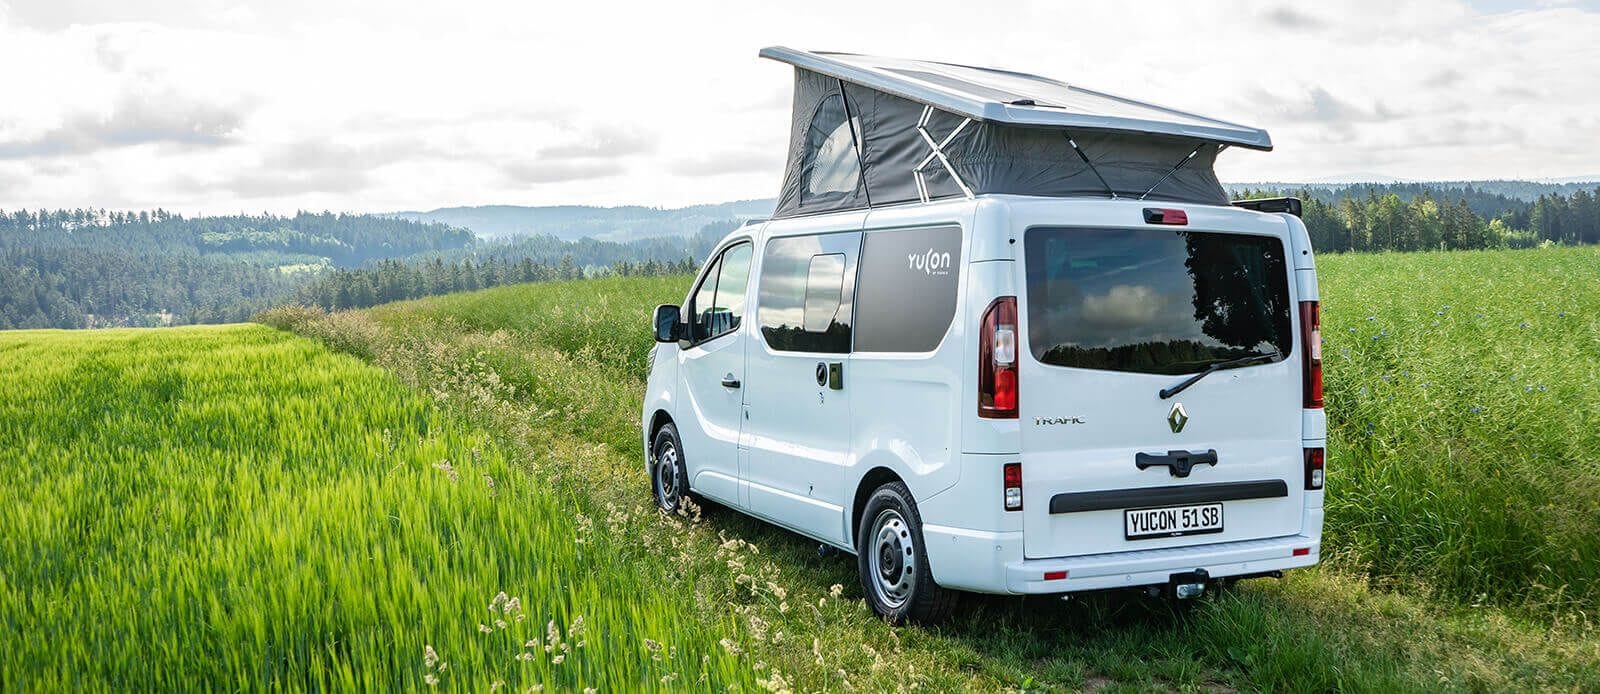 Die Frankia-Submarke Yucon bietet ihren Campingvan jetzt auch auf Basis des Renault Trafic an. Das Spektrum reicht von einfach ausgestatteten Modellen bis hin zu Varianten mit fünf Sitzplätzen oder einer mit langem Radstand.